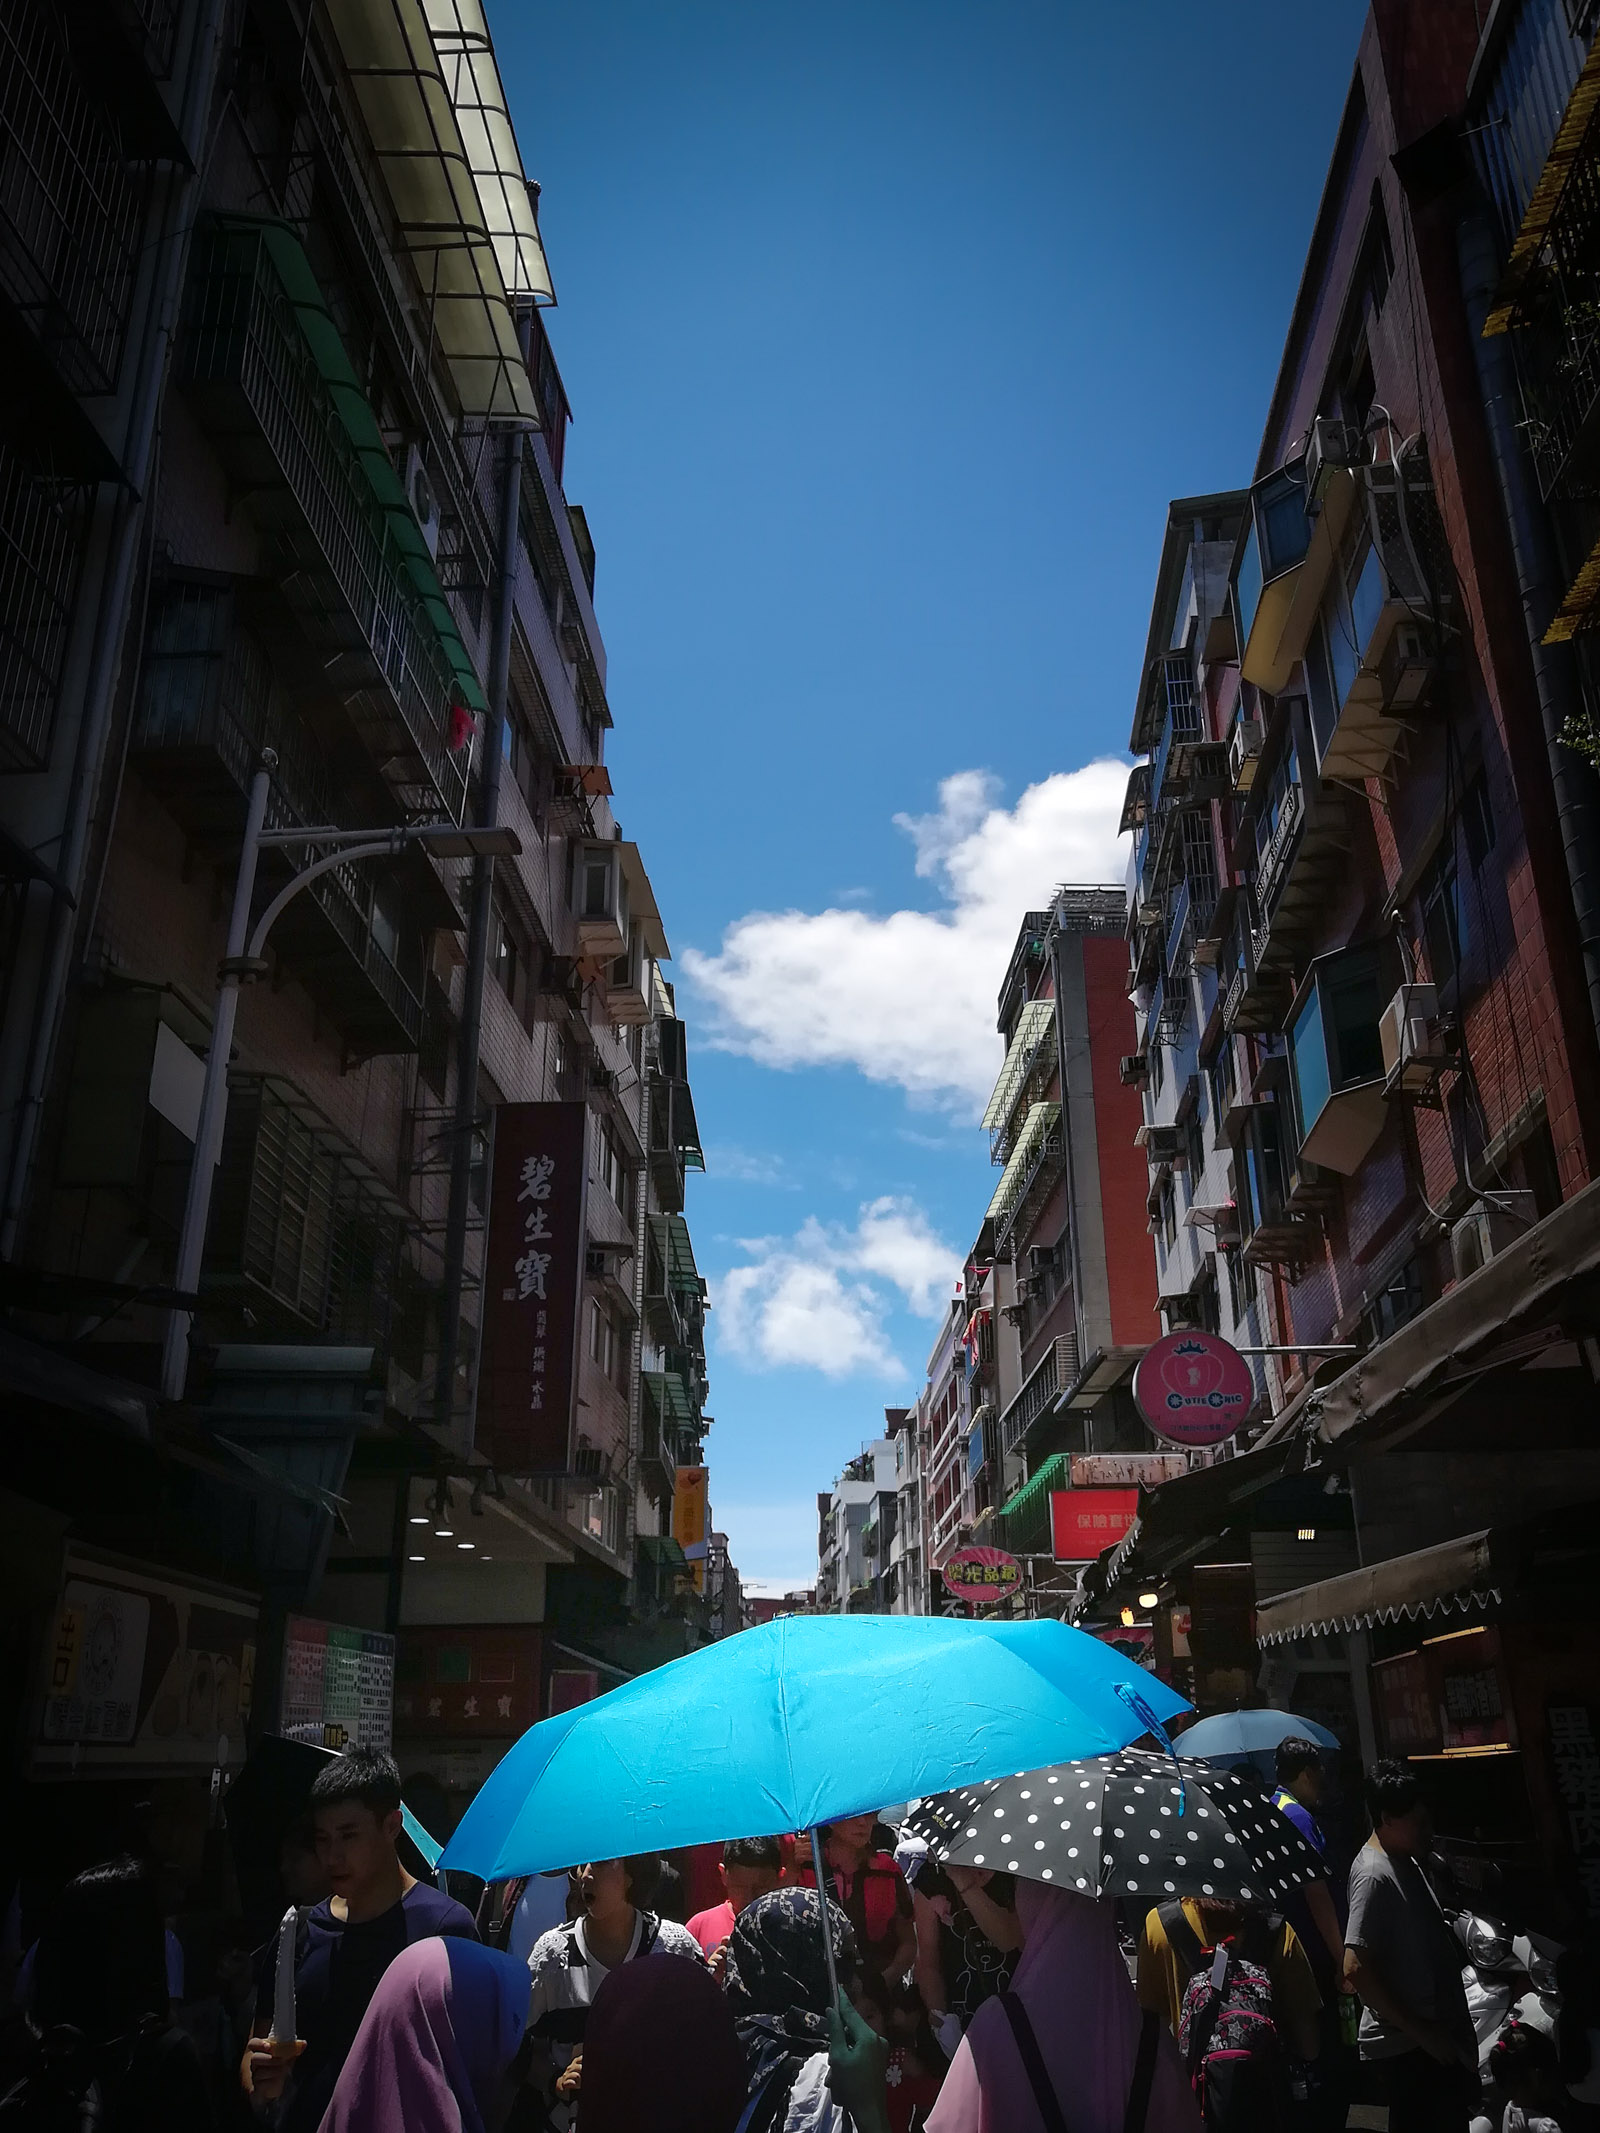 淡水公明街に咲いたターコイズブルーの日傘